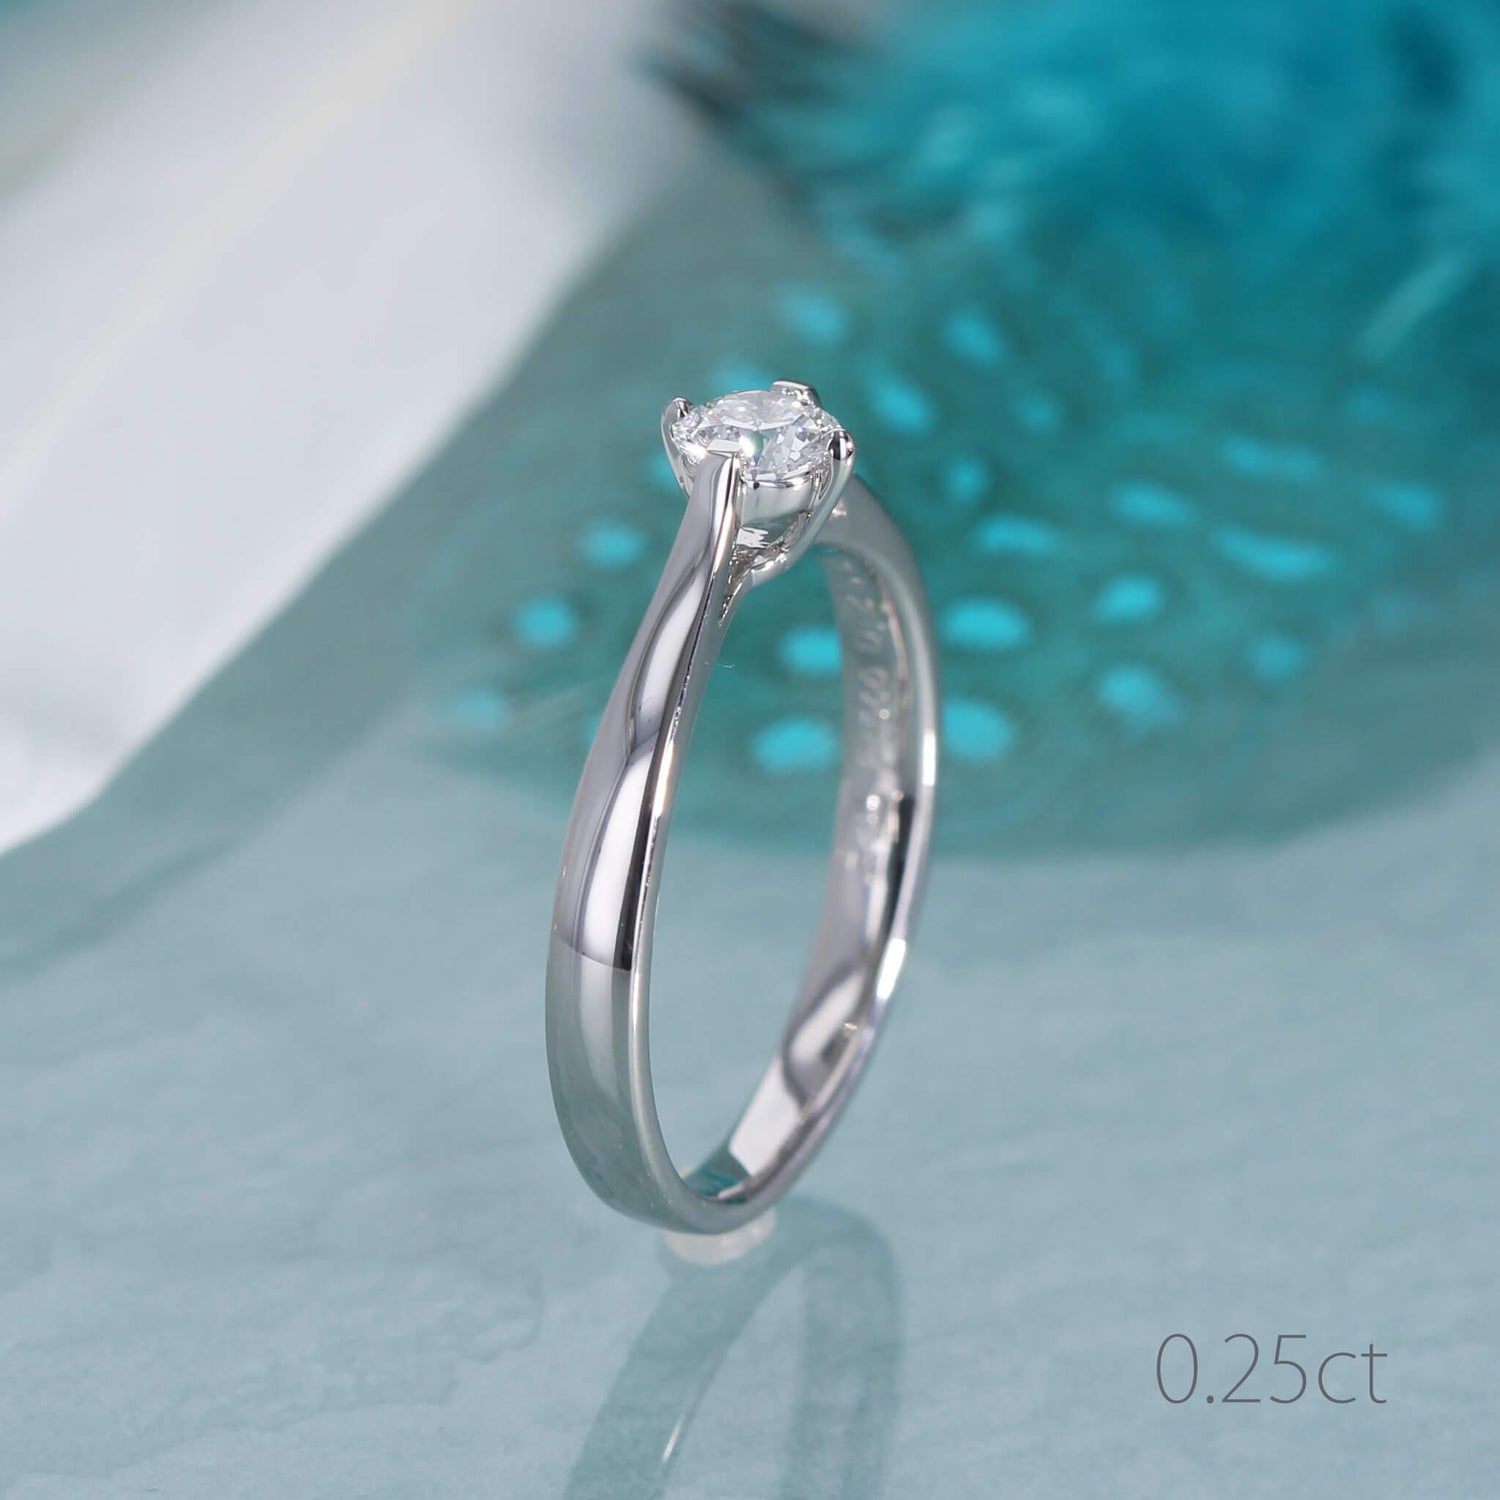 婚約指輪 エンゲージリング ダイヤモンド プラチナ 18金 ピンク